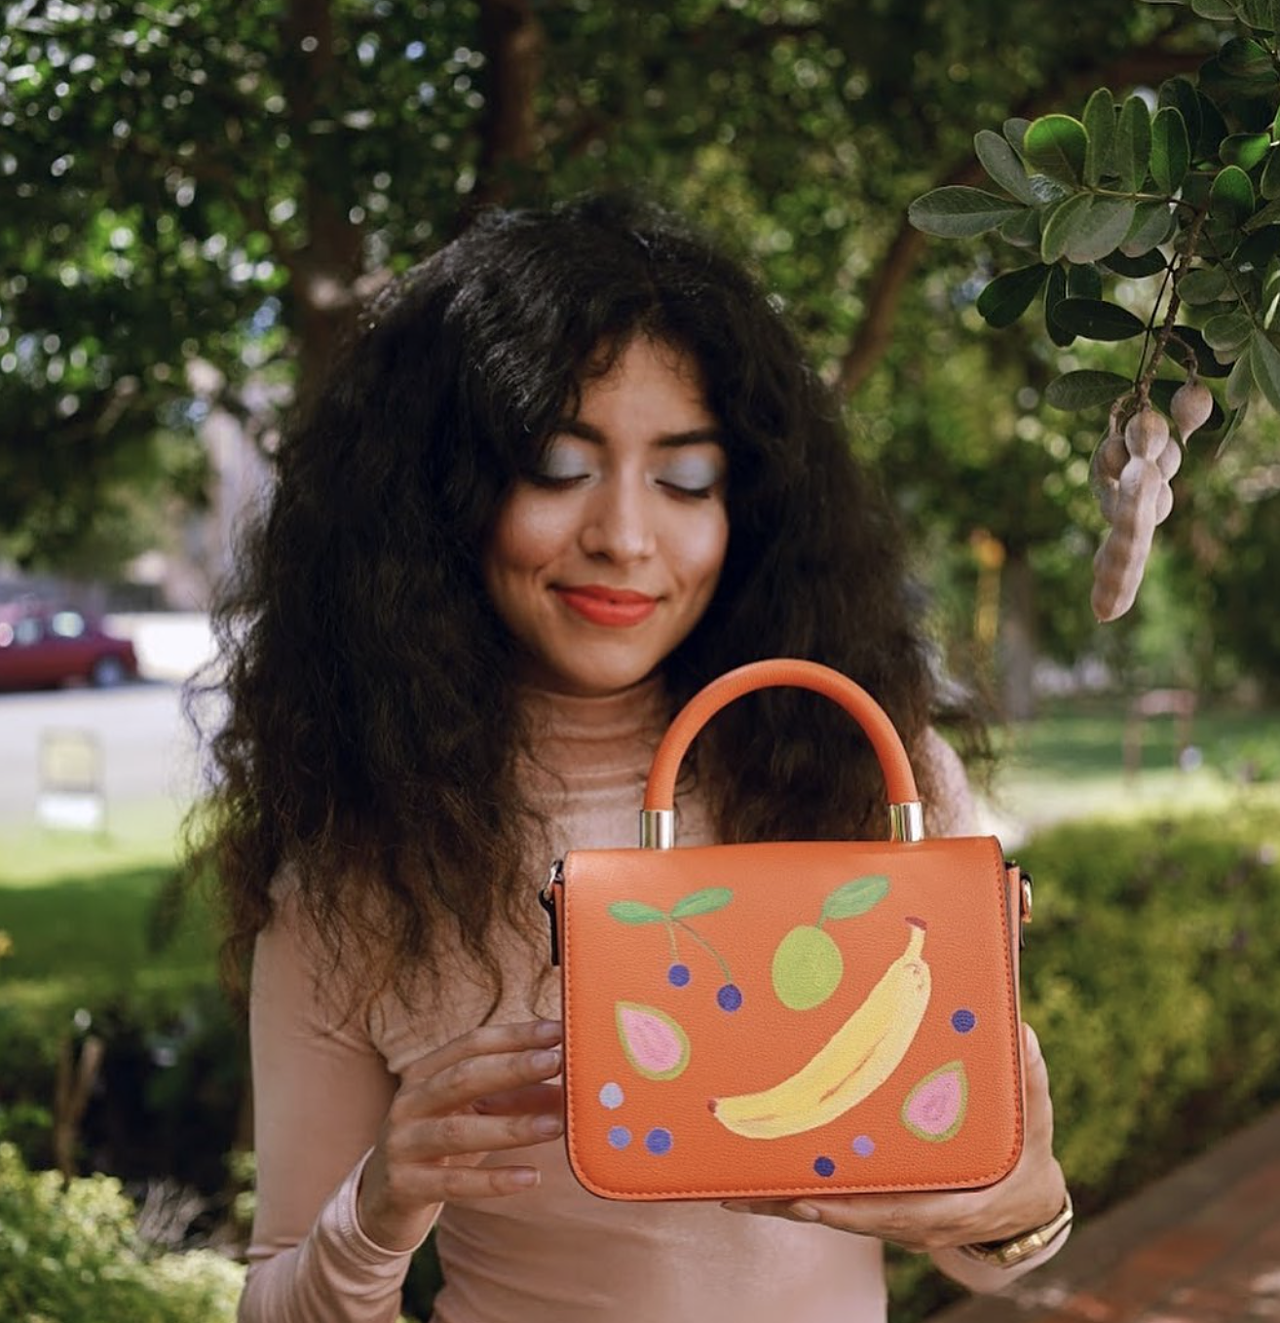 Breakfast Friend
@breakfastfriend
Bárbara Miñarro gives reclaimed purses new life 
Photo via Instagram / breakfastfriend